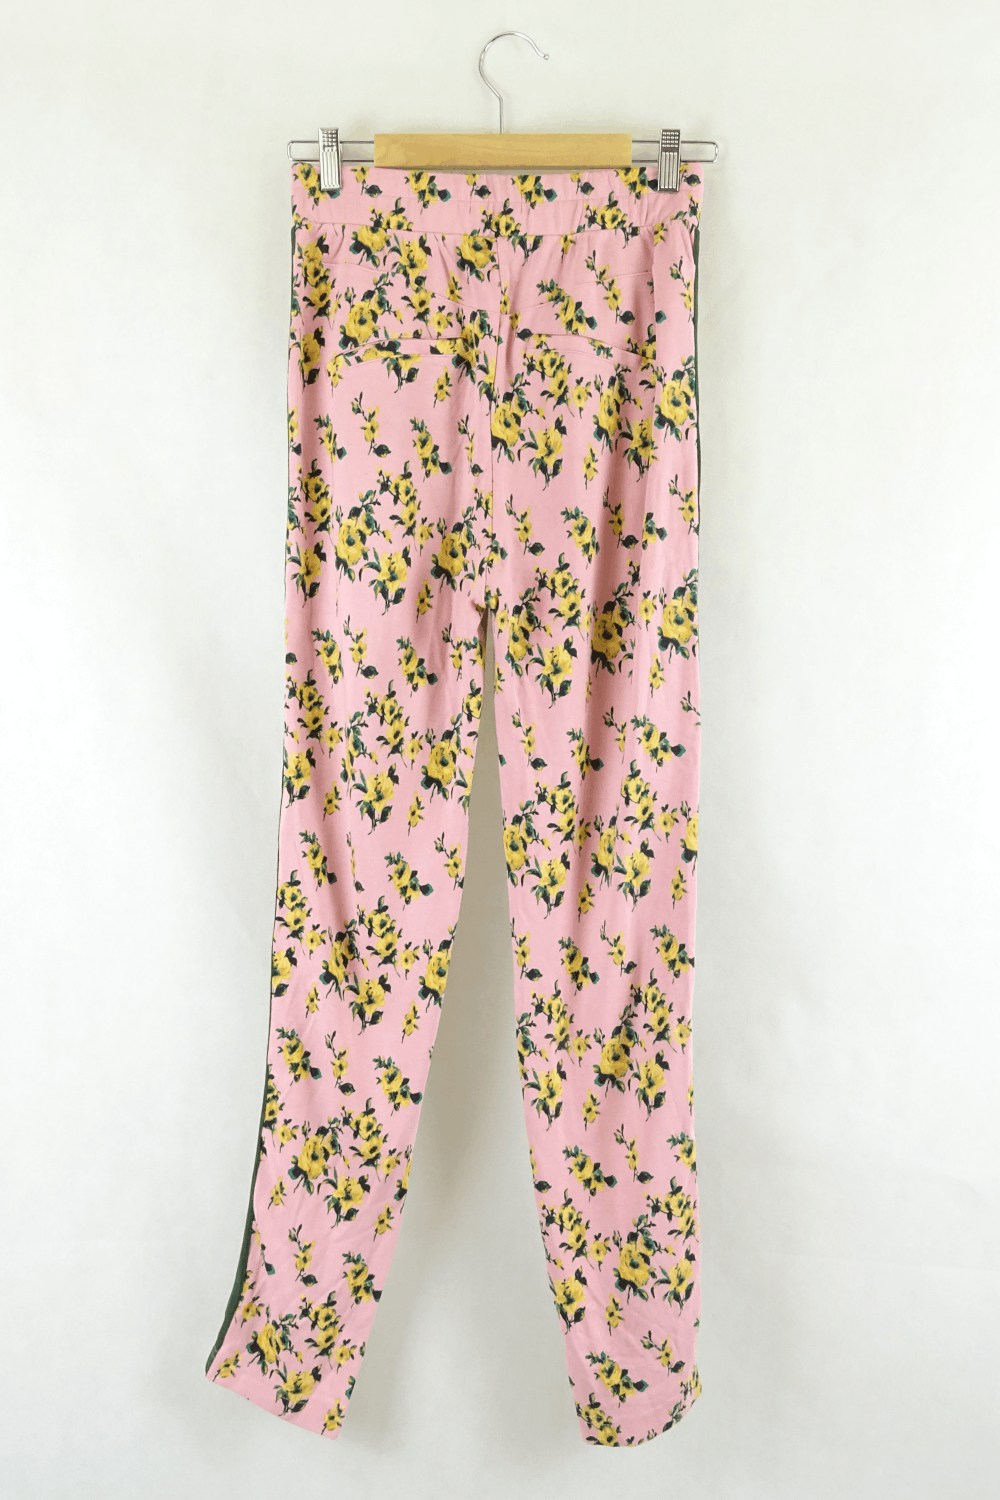 Baumund Pink Floral Pants S